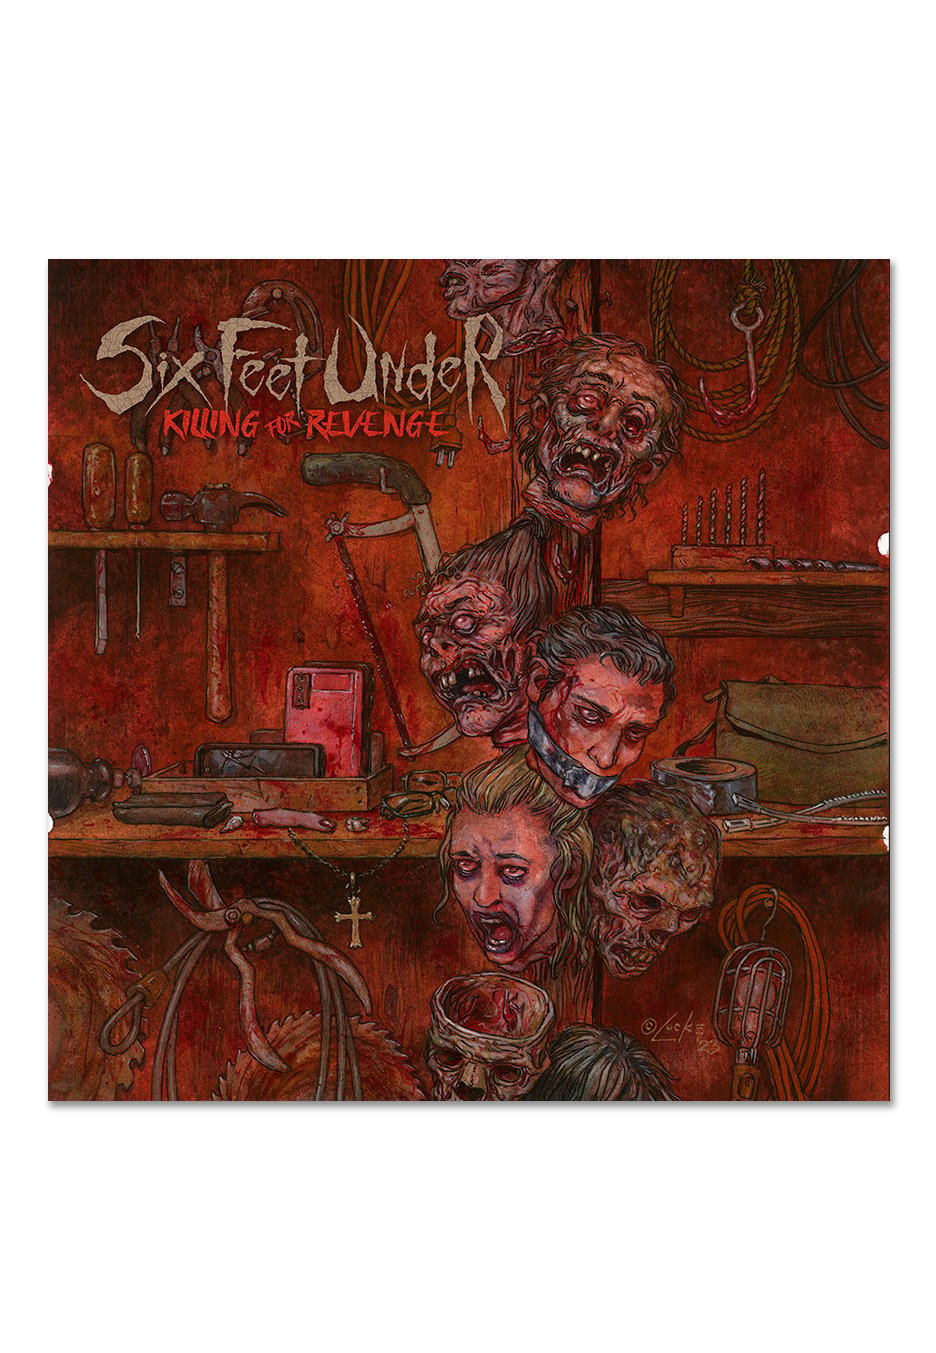 Six Feet Under - Killing For Revenge Ltd. Crusted Blood - Marbled Vinyl